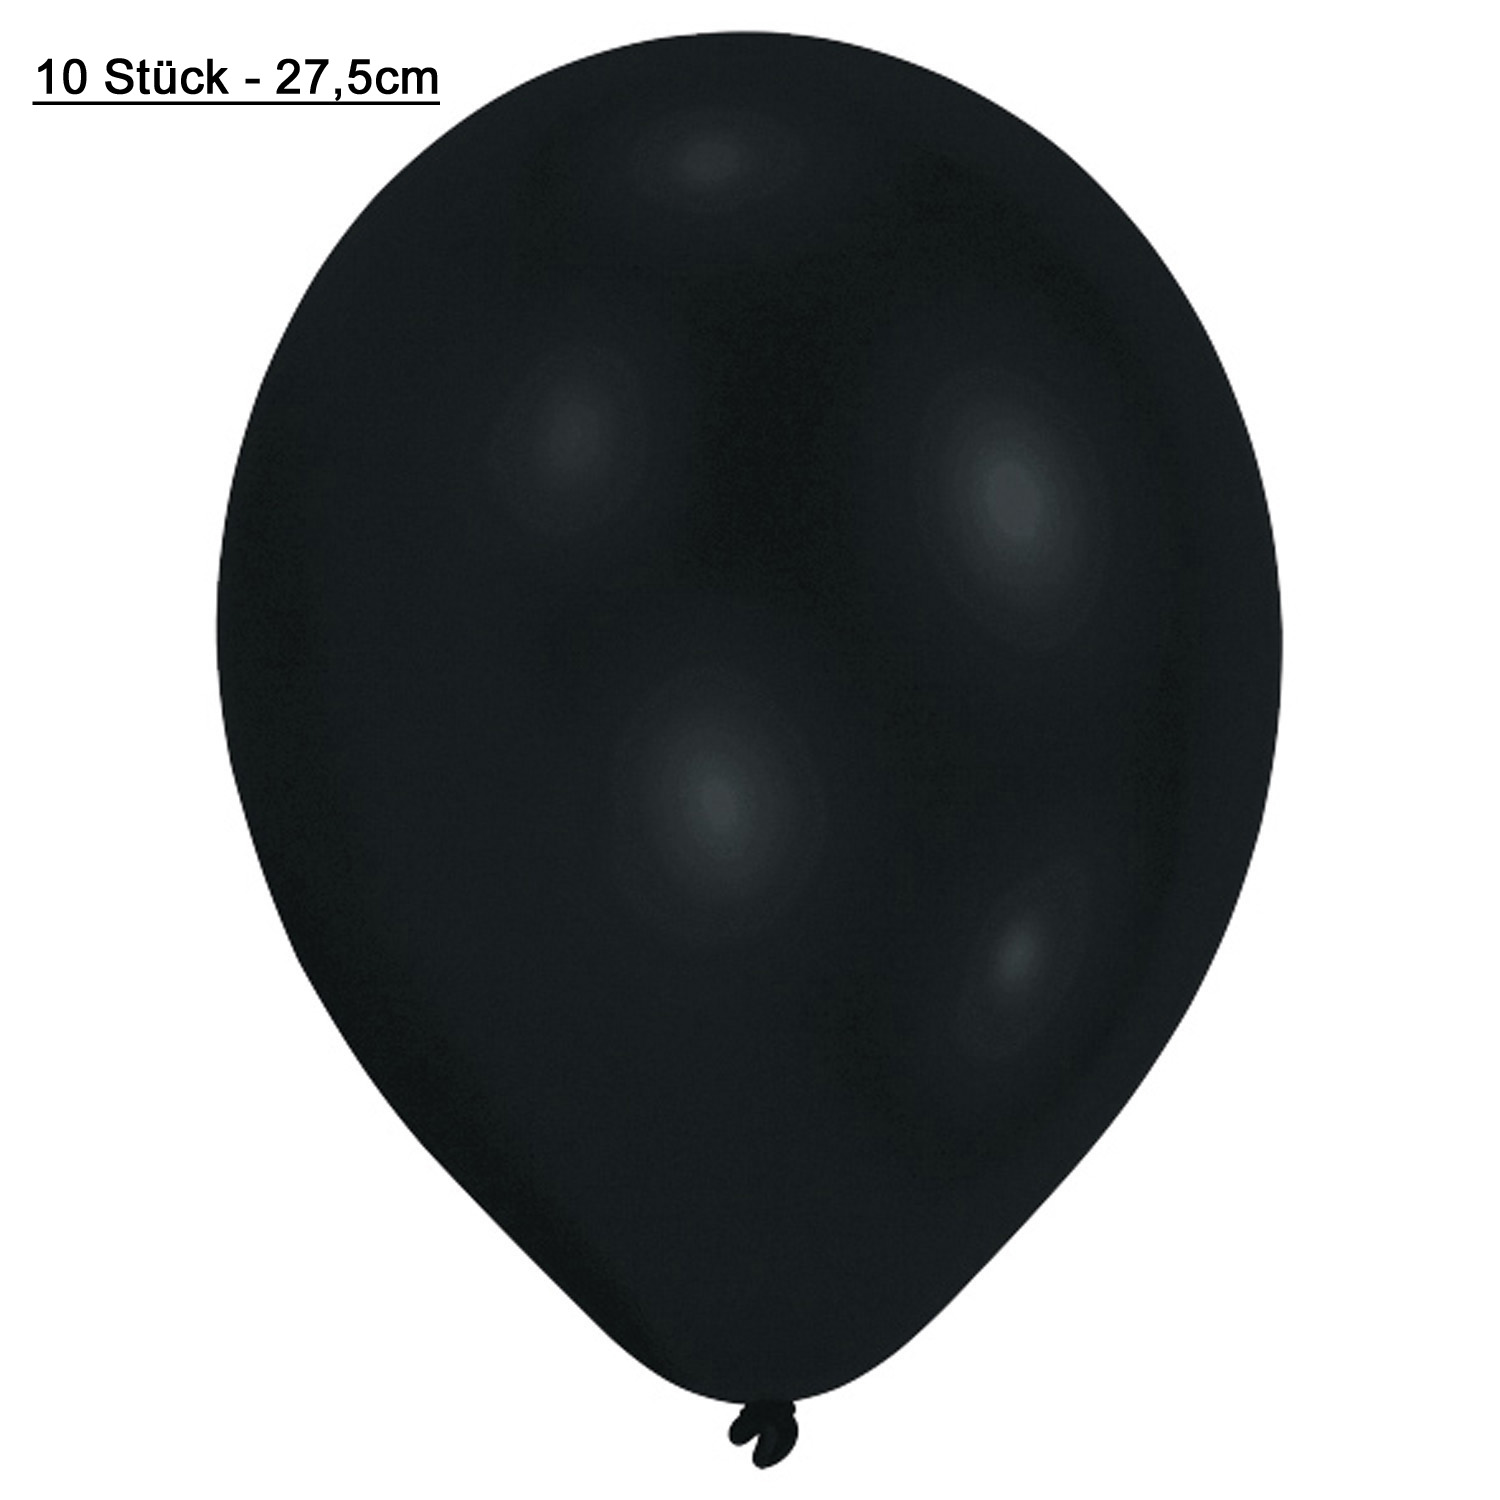 Latex Ballon Luftballon schwarz 10 Stück - D 27,5cm Heliumballon, black